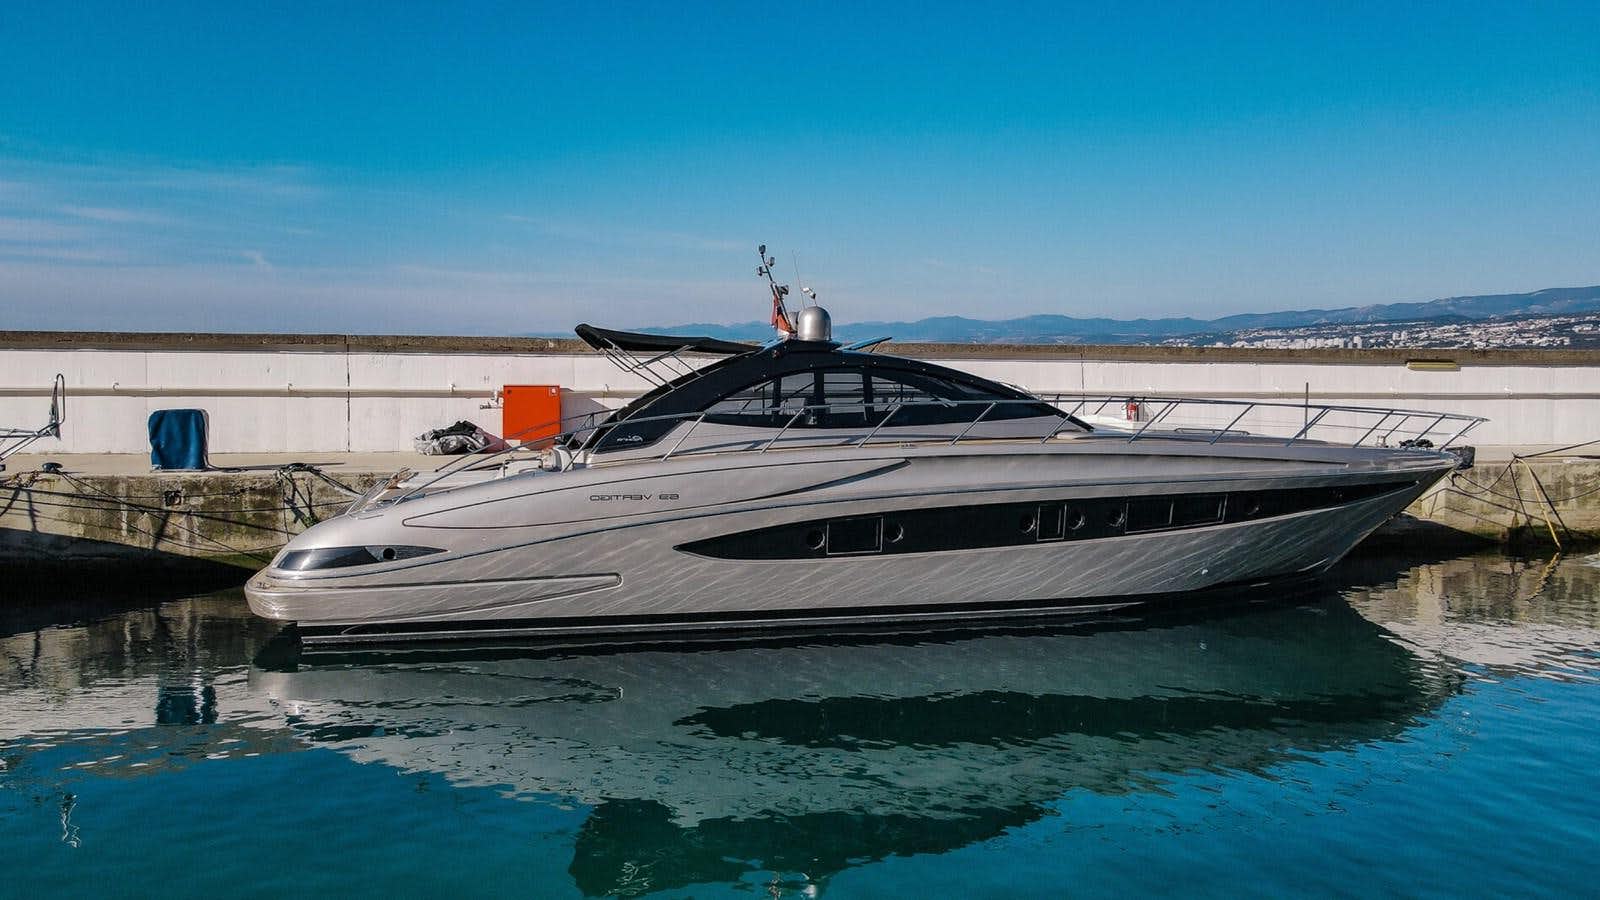 Riva 63' vertigo
Yacht for Sale